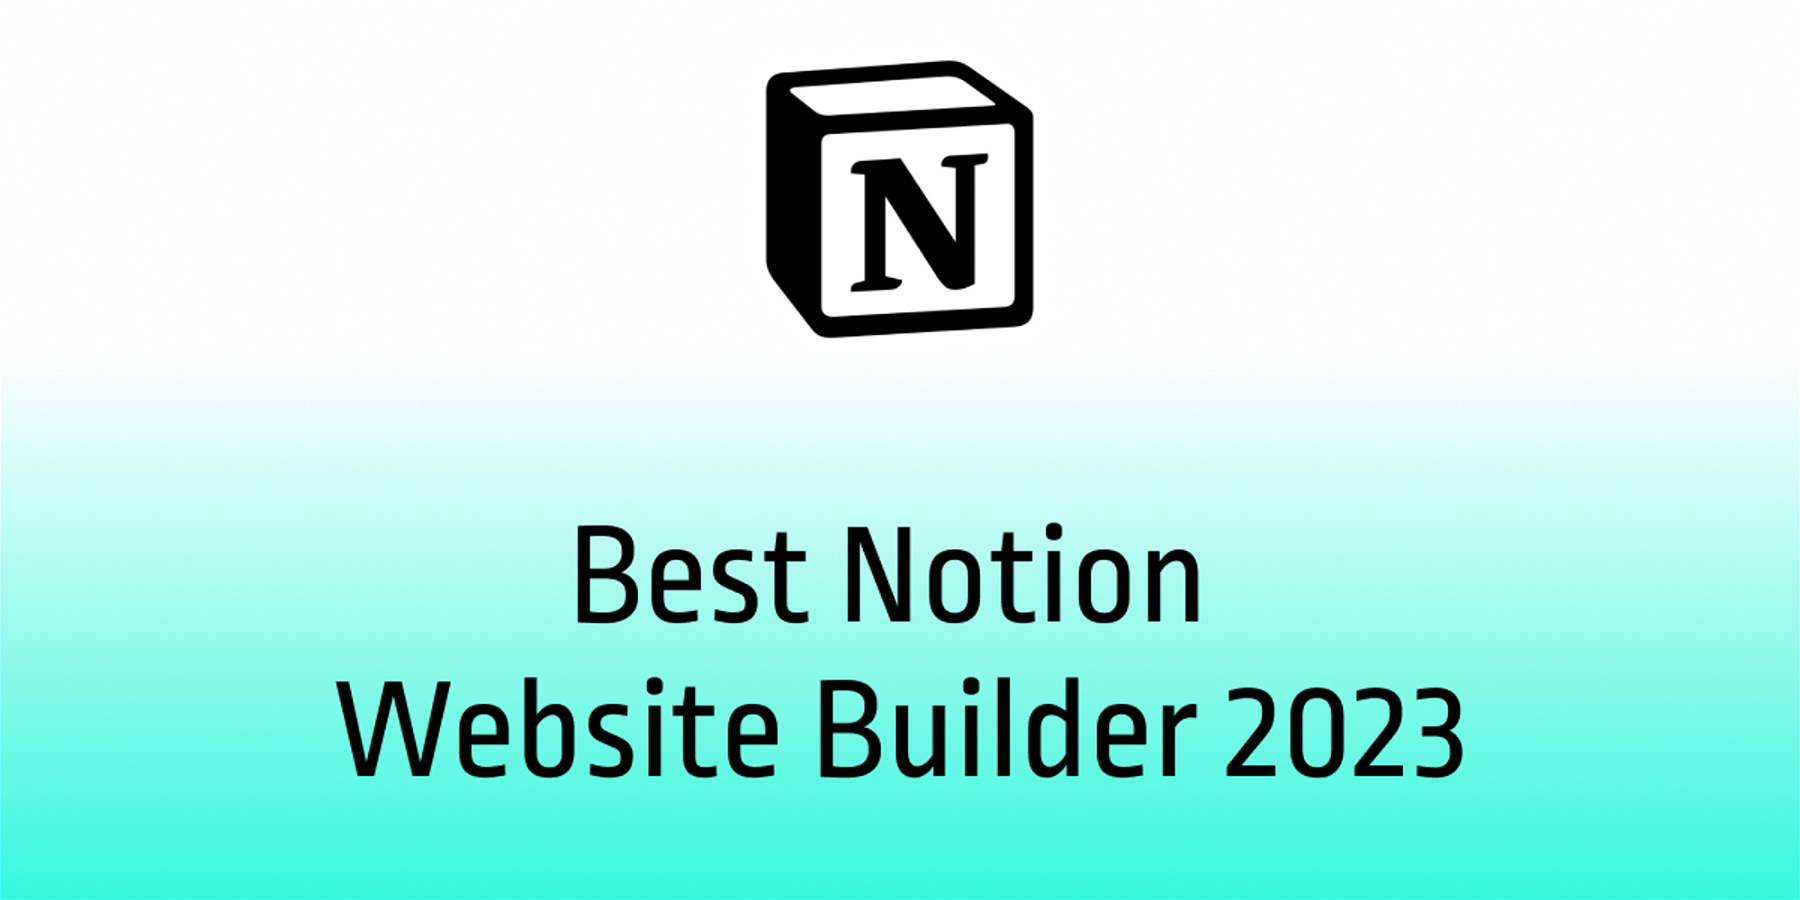 Best Notion Website Builder 2023